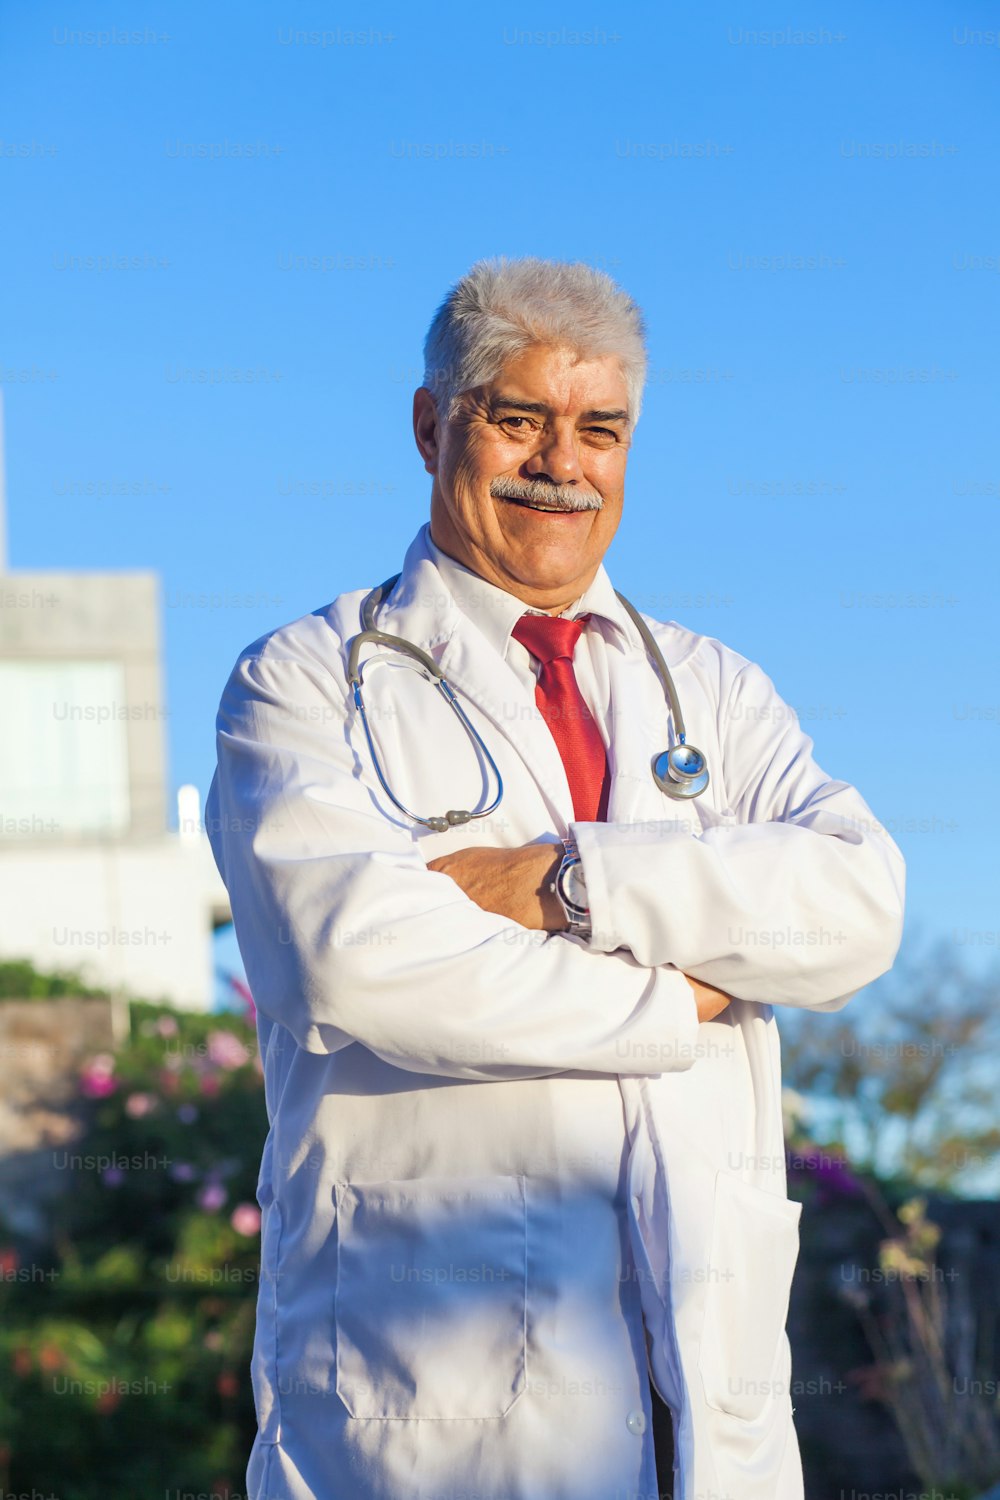 멕시코 시티 또는 라틴 아메리카에 있는 멕시코 병원의 라틴 남성 수석 의사